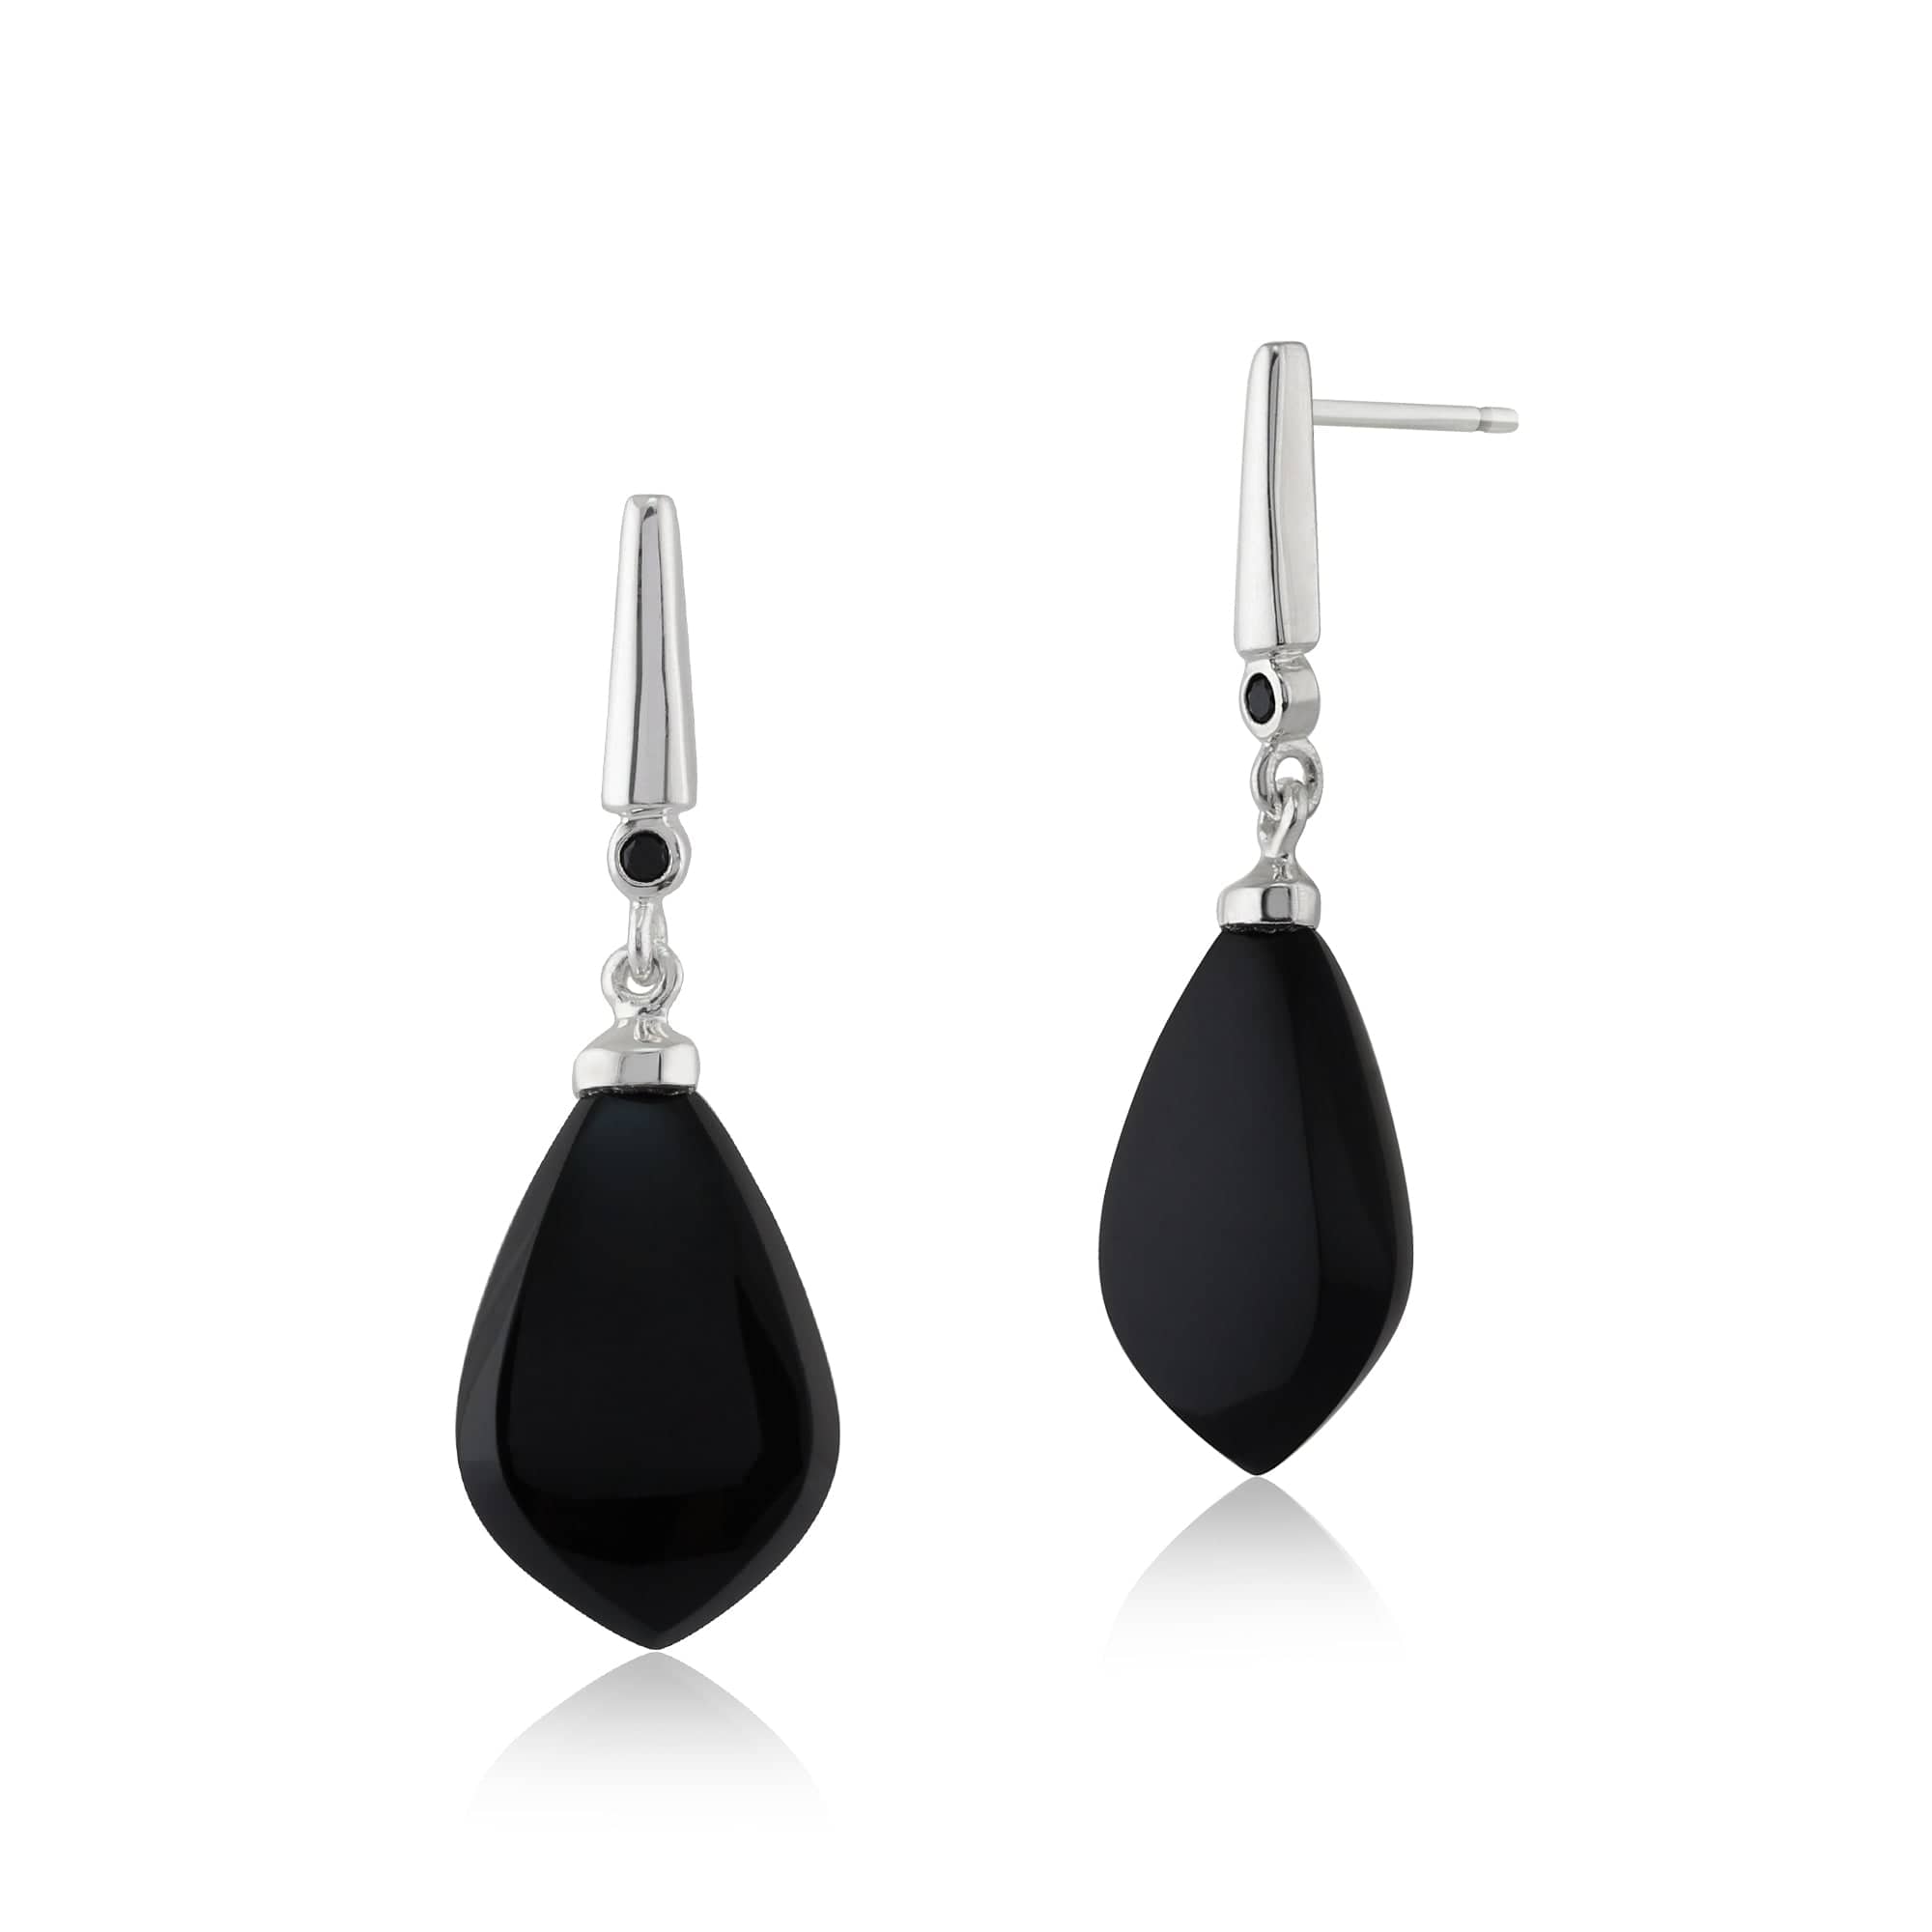 Art Deco Style Pear Black Onyx & Black Spinel Drop Earrings in 925 Sterling Silver - Gemondo